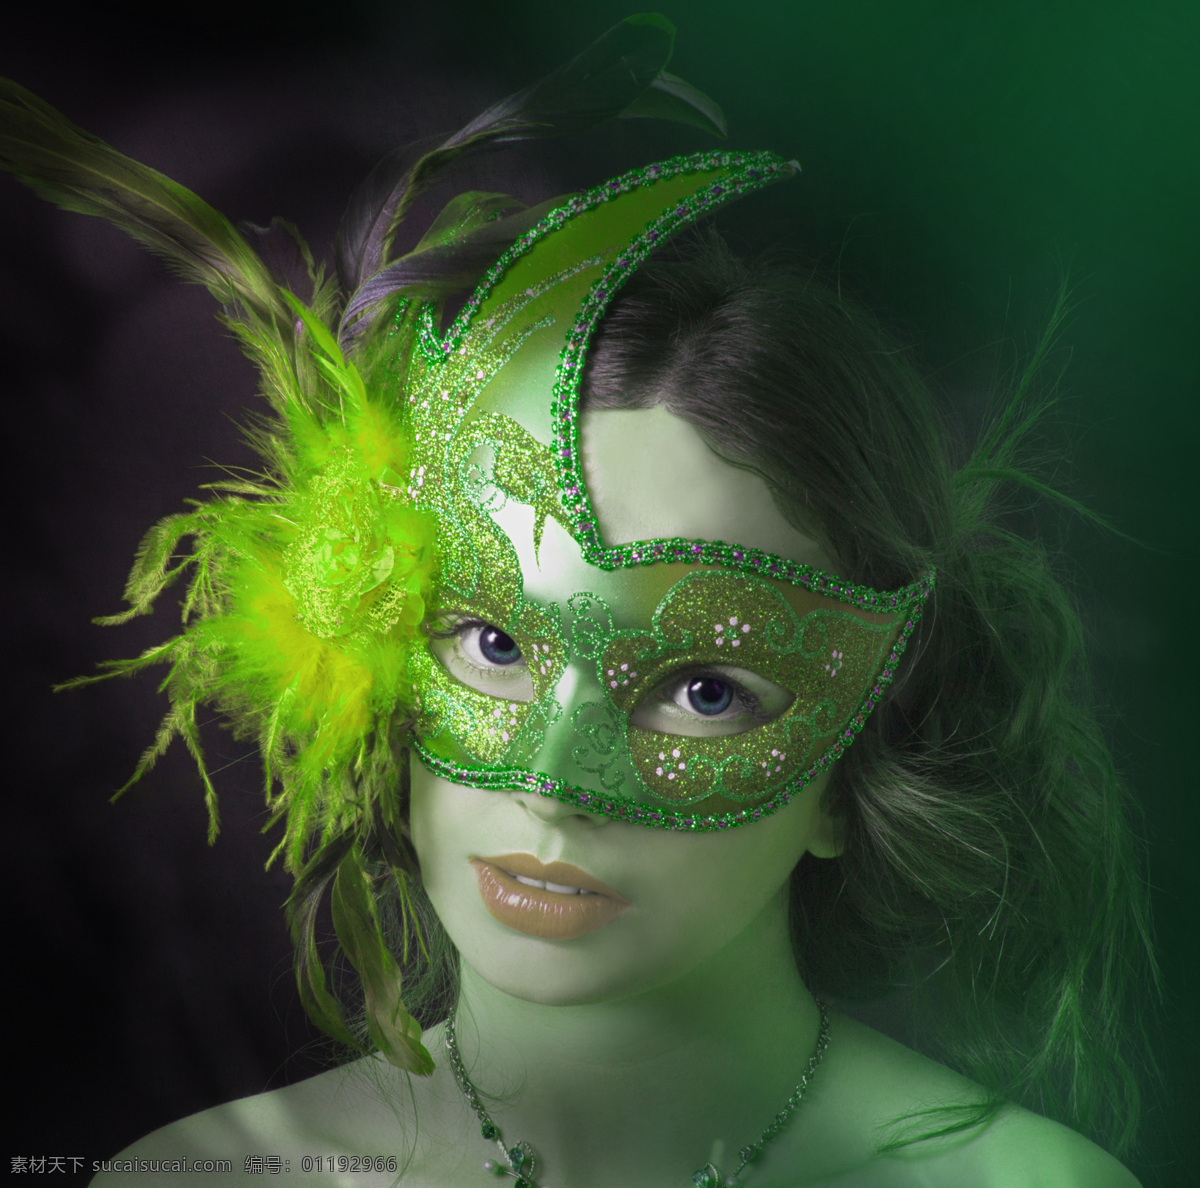 绿色 面具 美女图片 羽毛 美女 女人 外国女人 人物图片